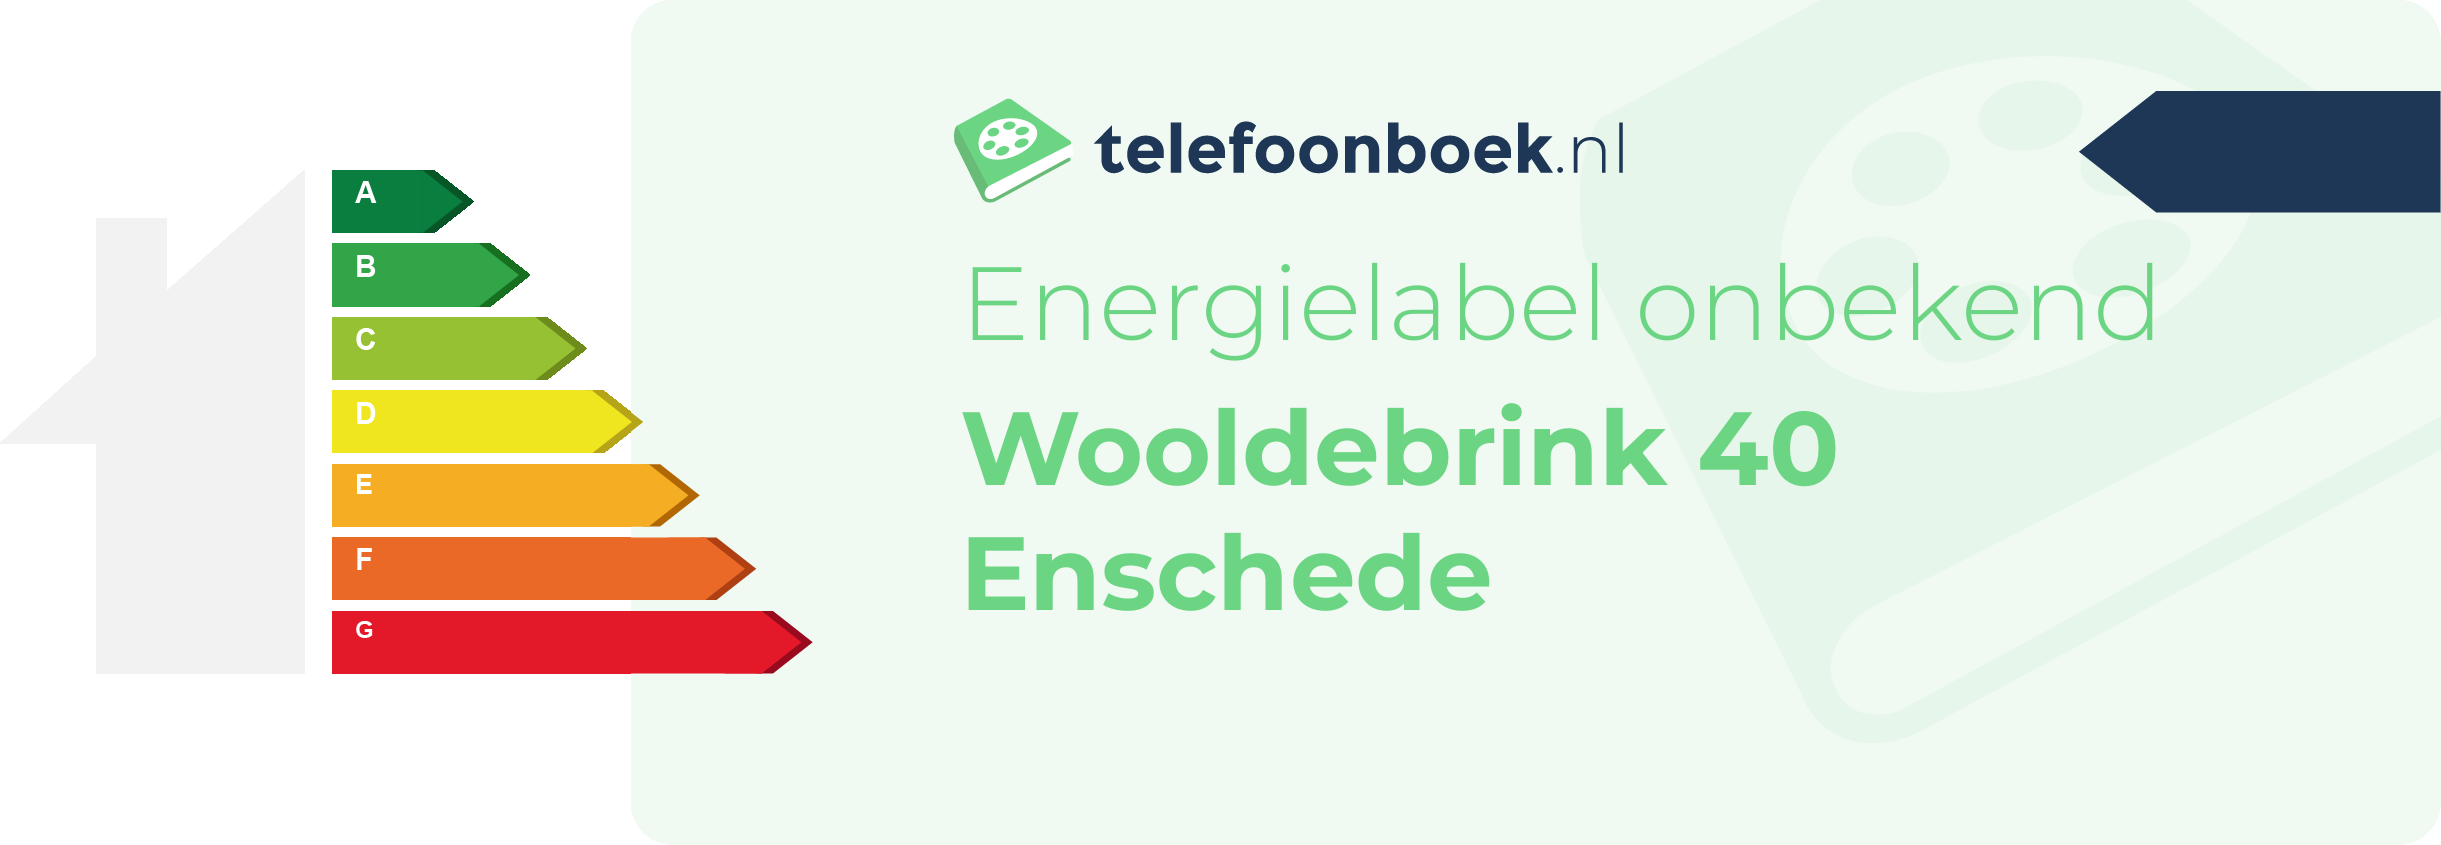 Energielabel Wooldebrink 40 Enschede